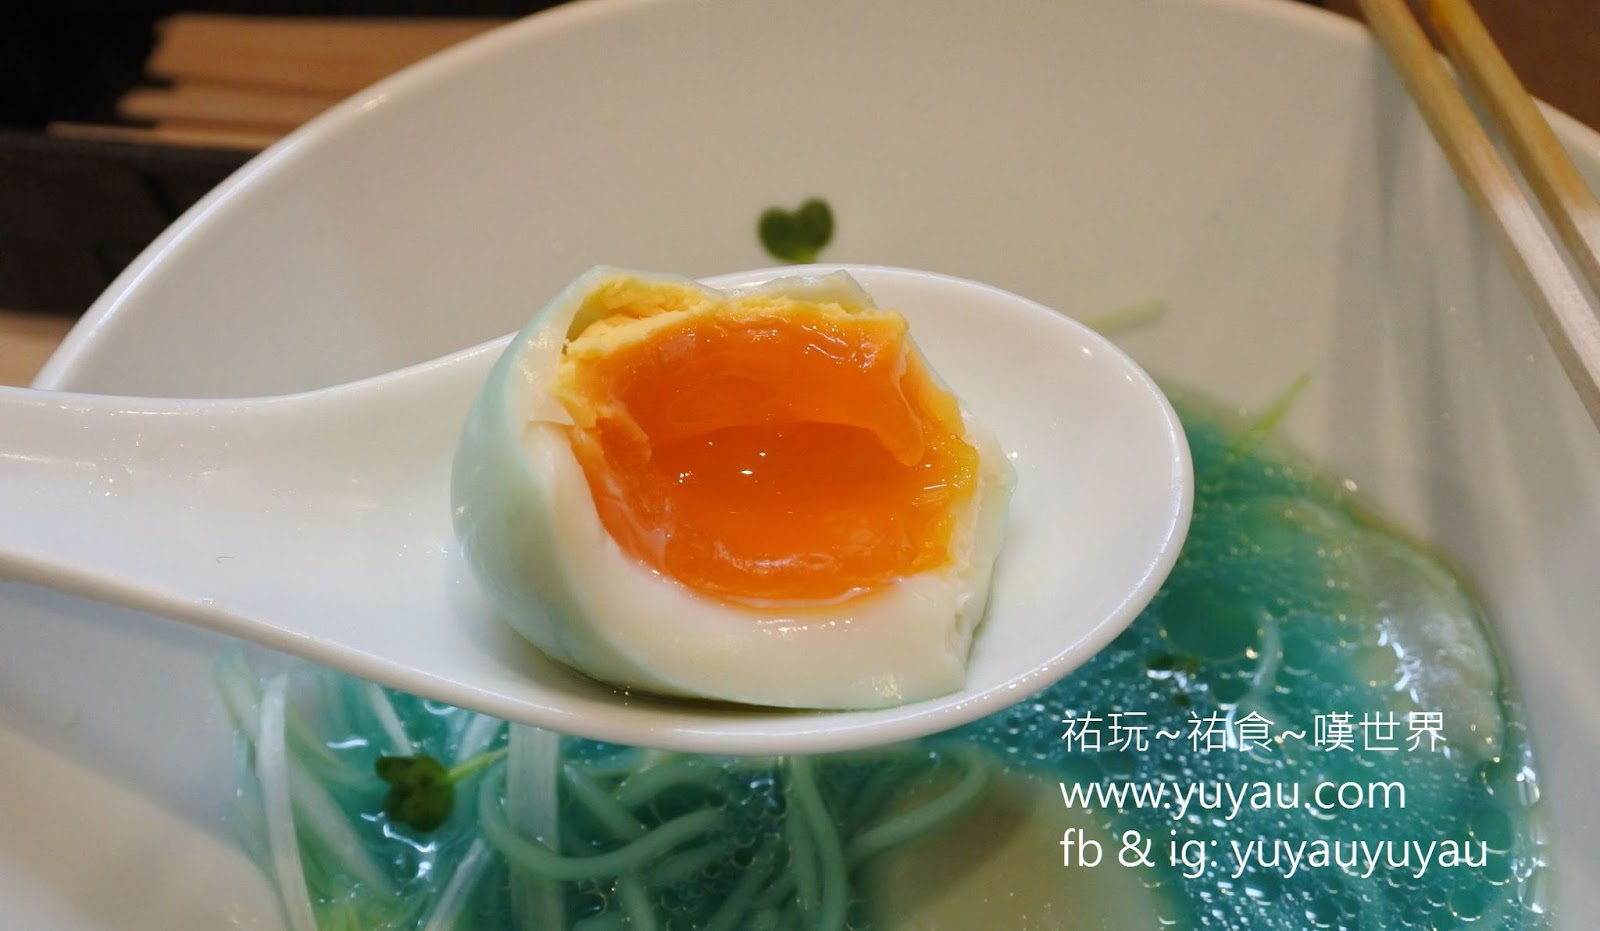 東京美食 - 拉麵吉法師 KIPPOSHI 超特別藍色濃厚雞湯拉麵 (有影片)